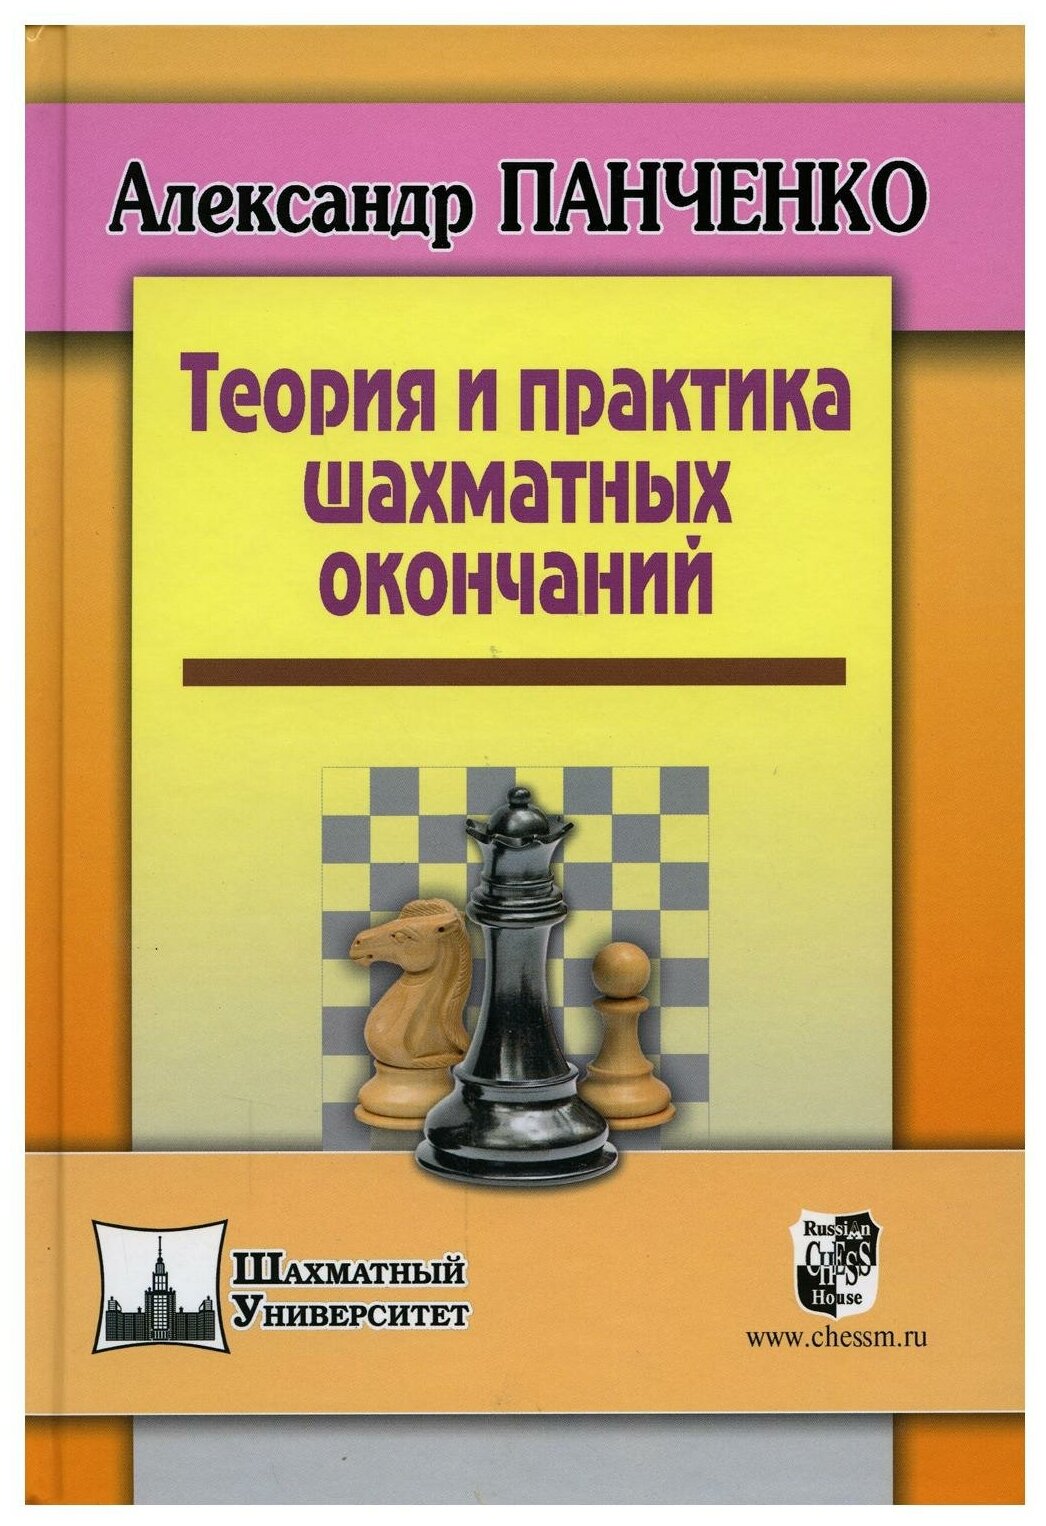 Теория и практика шахматных окончаний 5-е изд.